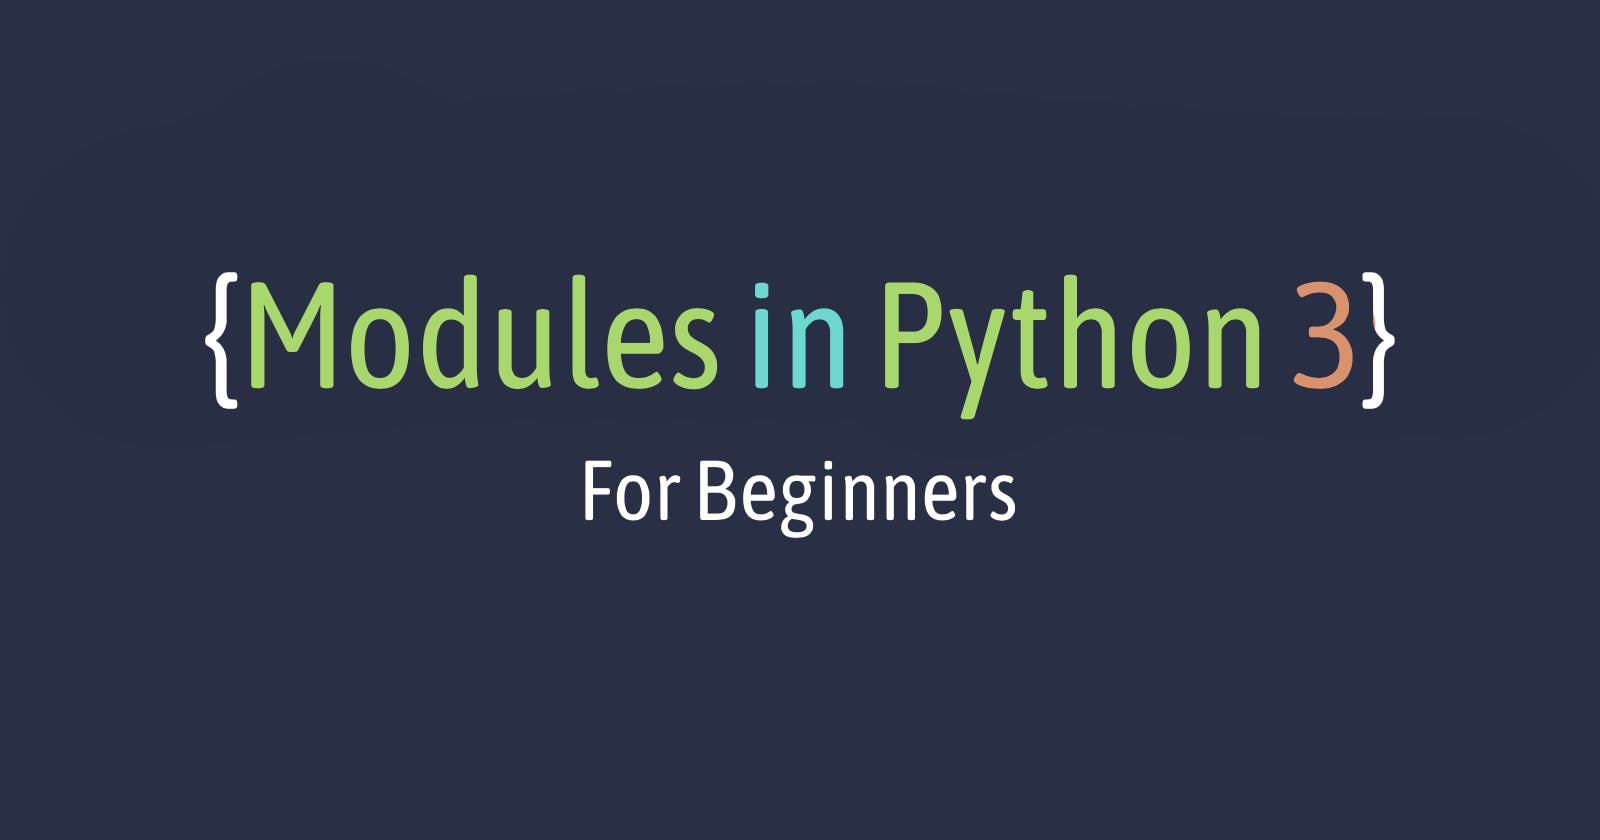 Modules in python 3